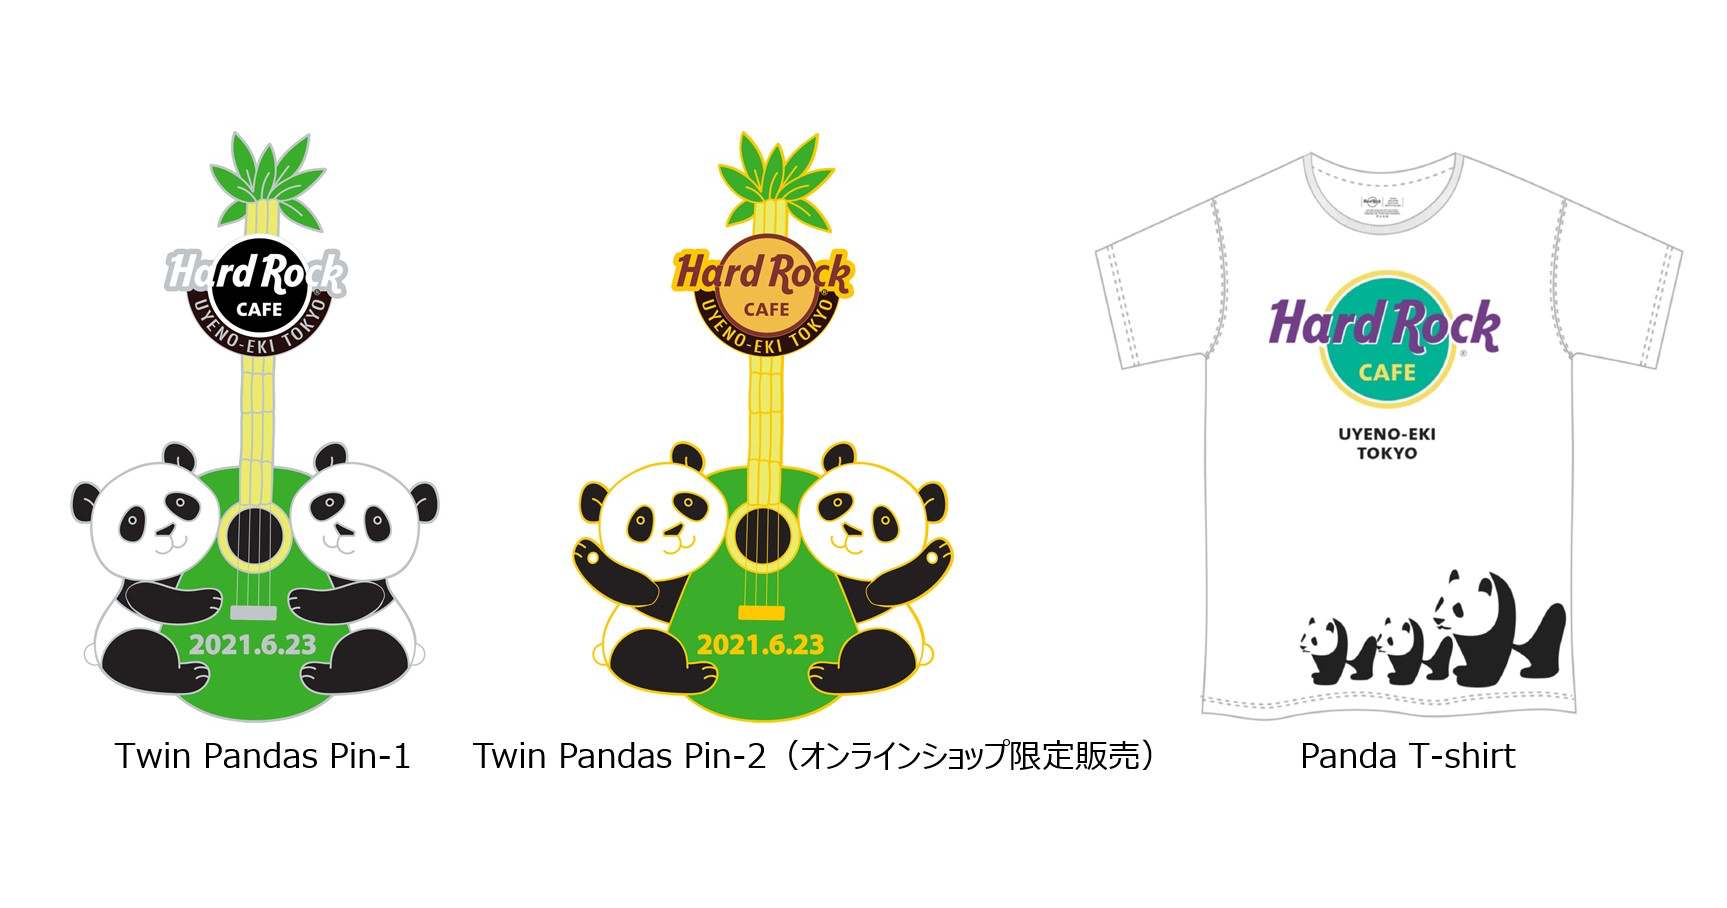 ハードロックカフェ 上野駅東京 動物園双子のパンダ赤ちゃん誕生を記念したグッズ販売 Moshi Moshi Nippon もしもしにっぽん